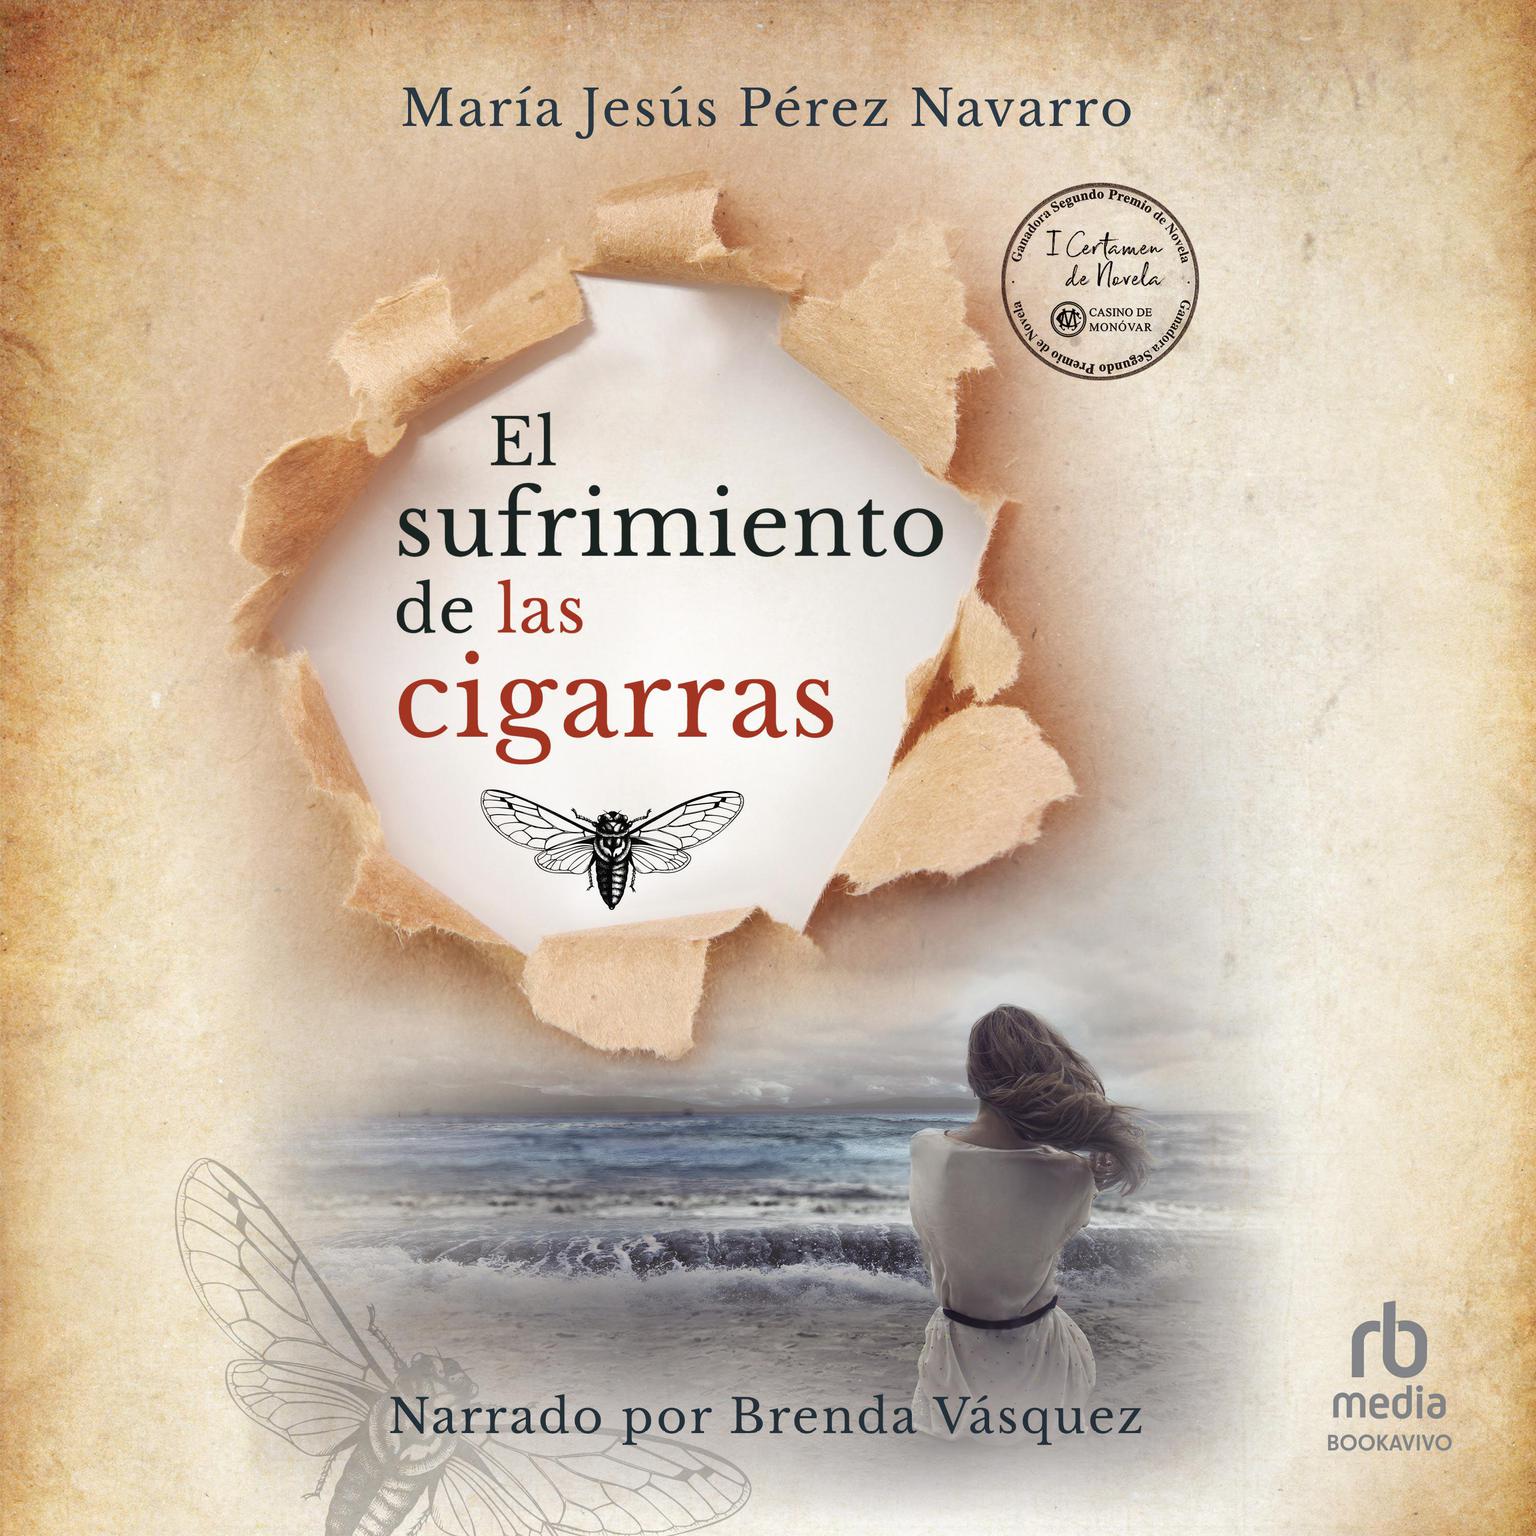 El sufrimiento de las cigarras Audiobook, by Maria Jesus Perez Navarro